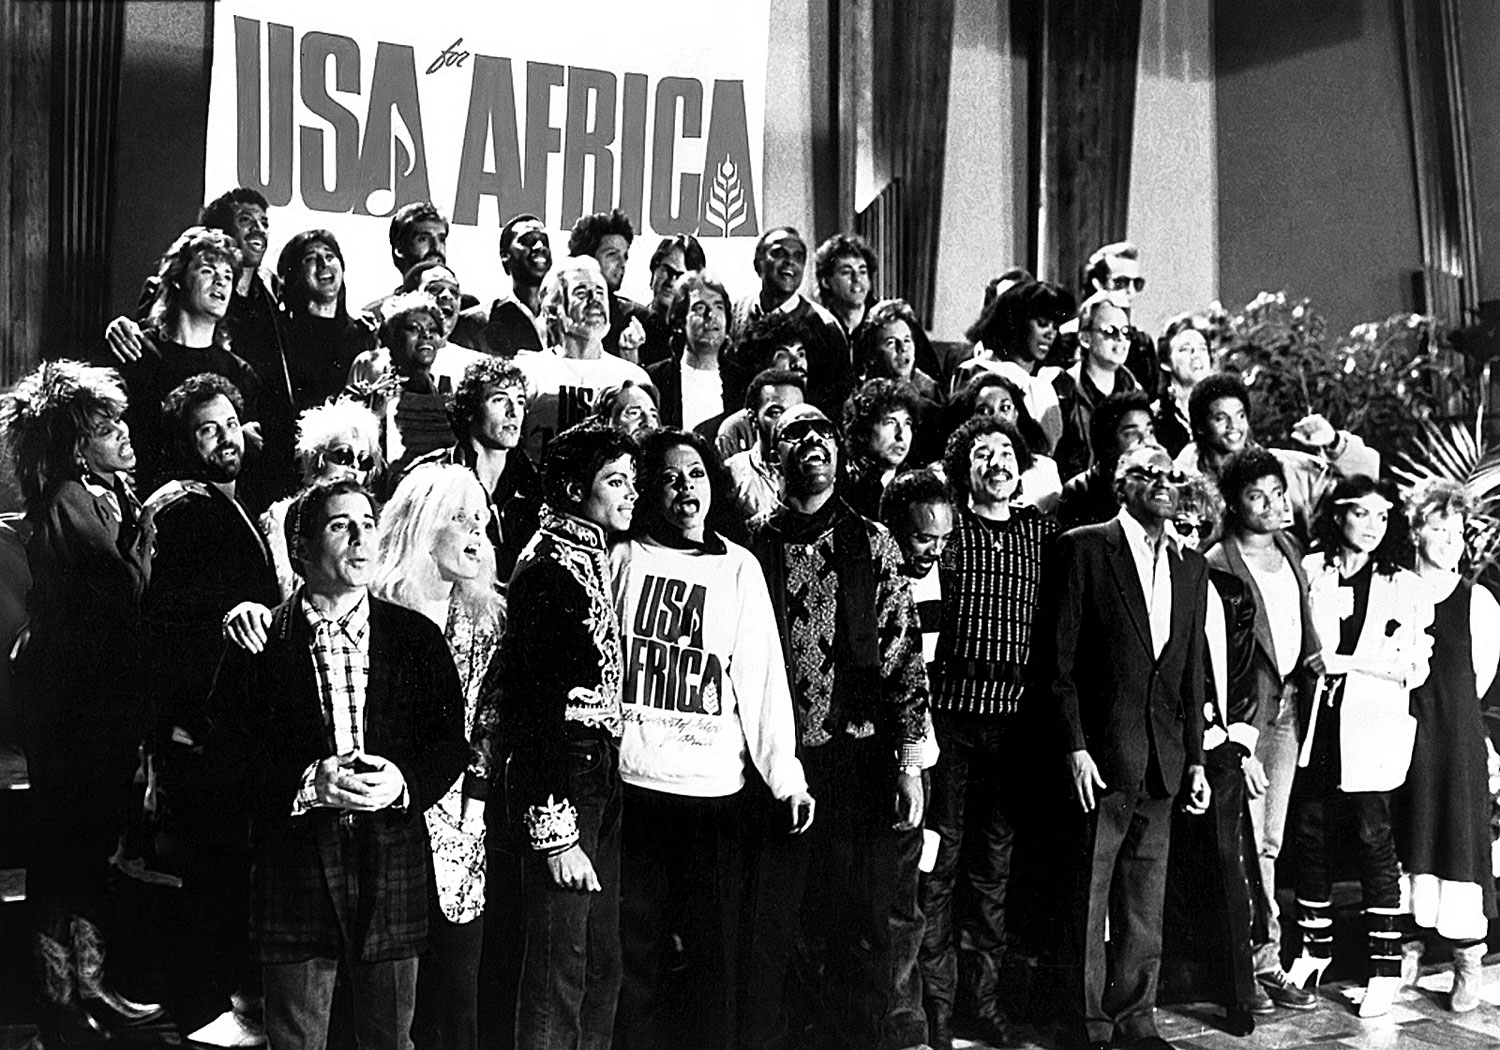 Az album egy esztendő alatt 50 millió dollárt hozott az afrikai éhezők megsegítésére